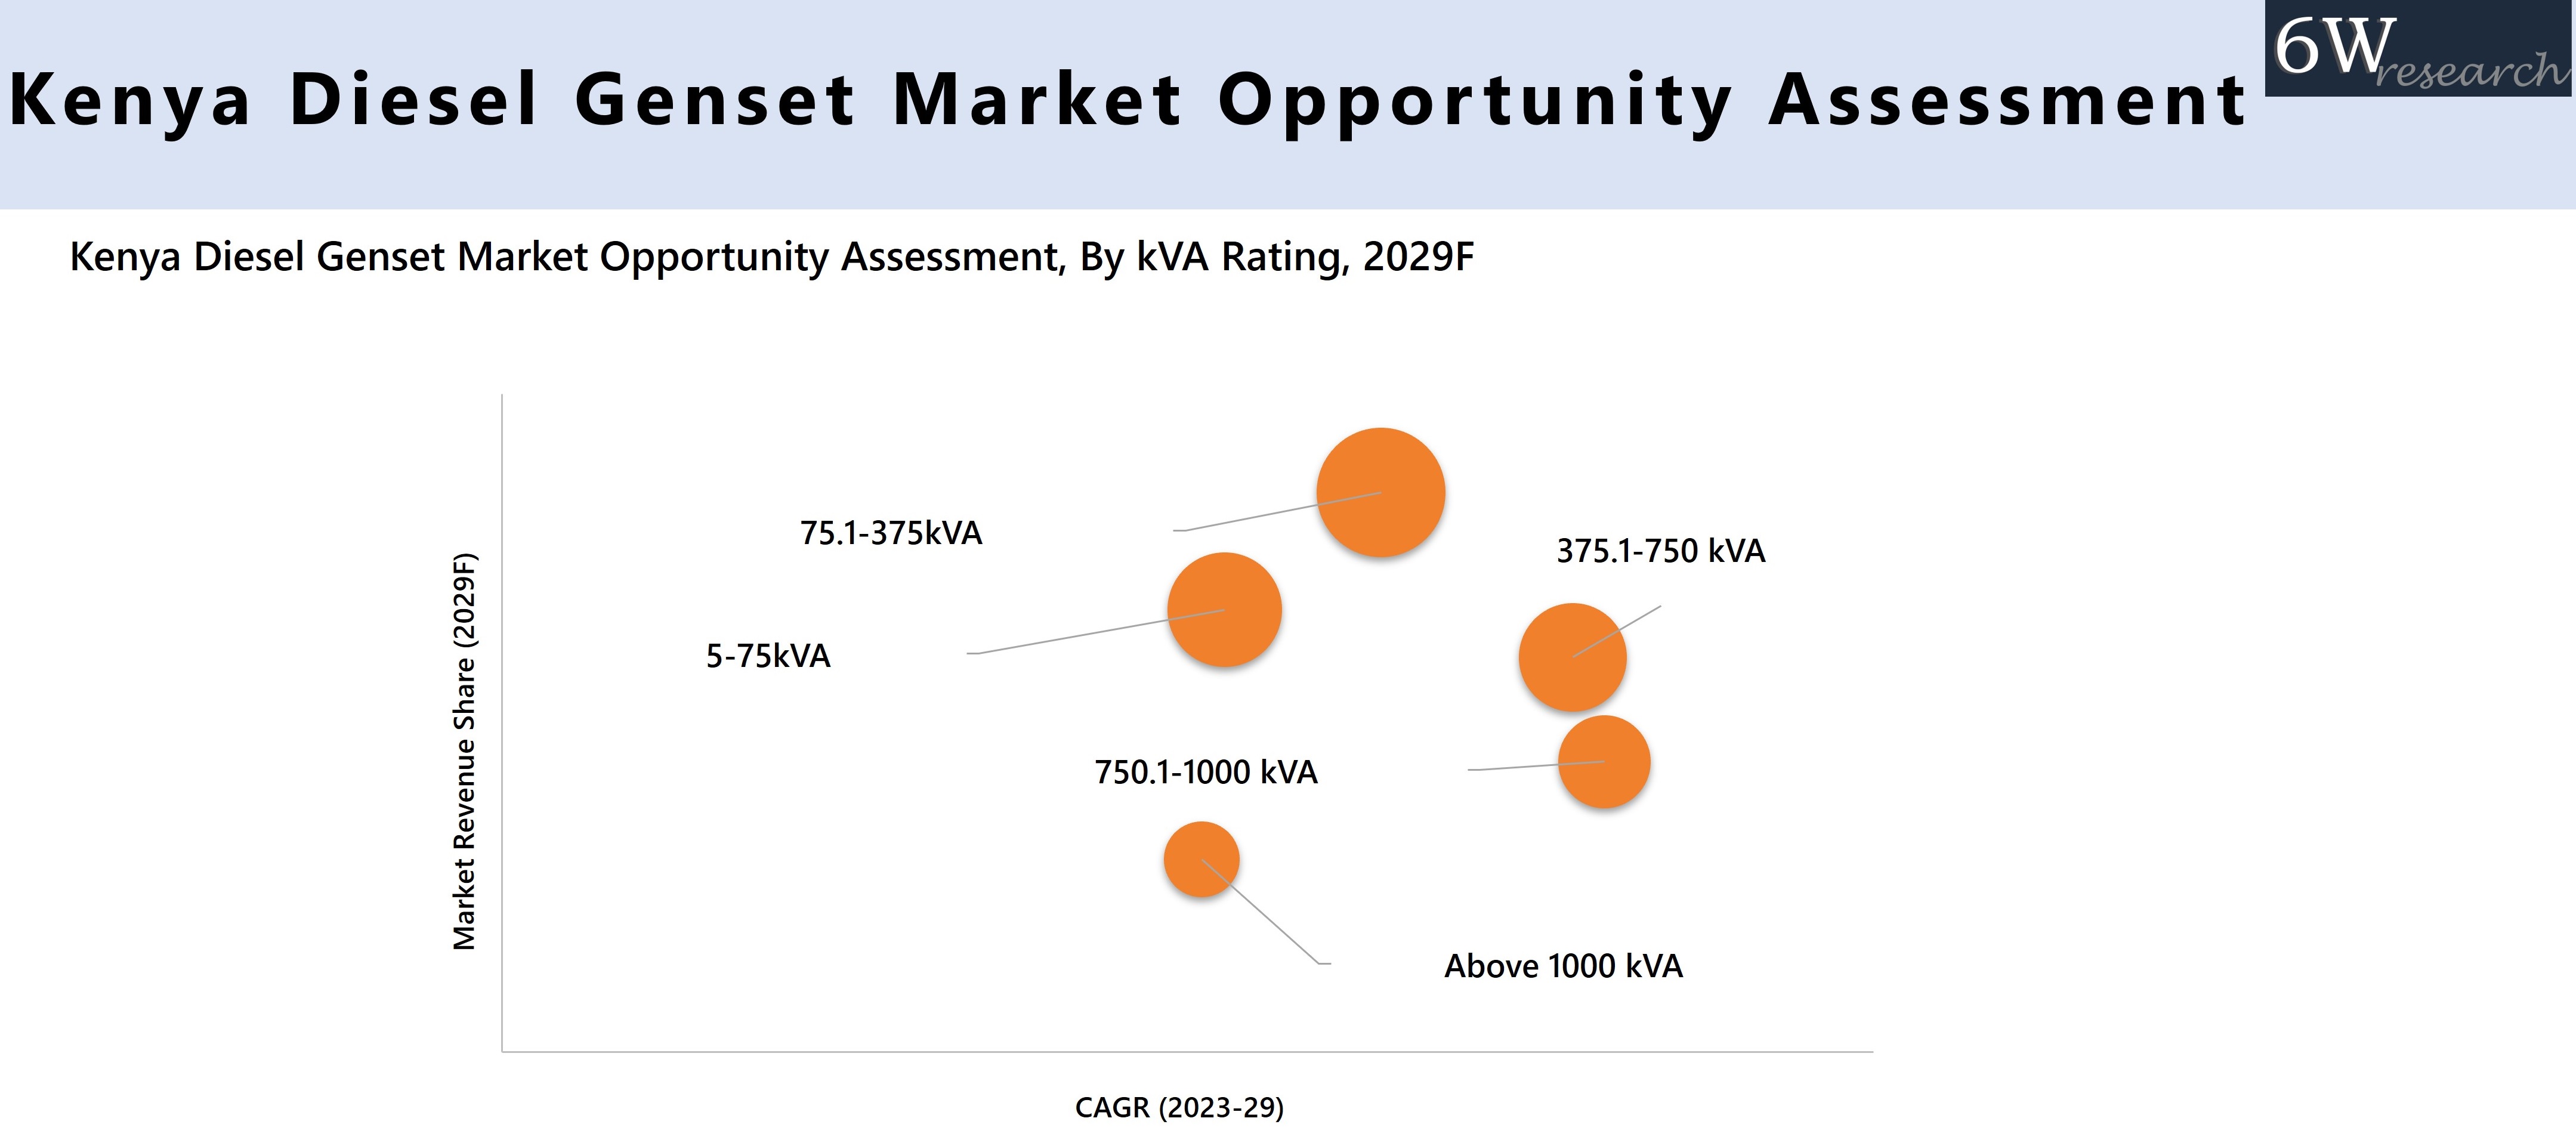 Kenya Diesel Genset Market Opportunity Assessment